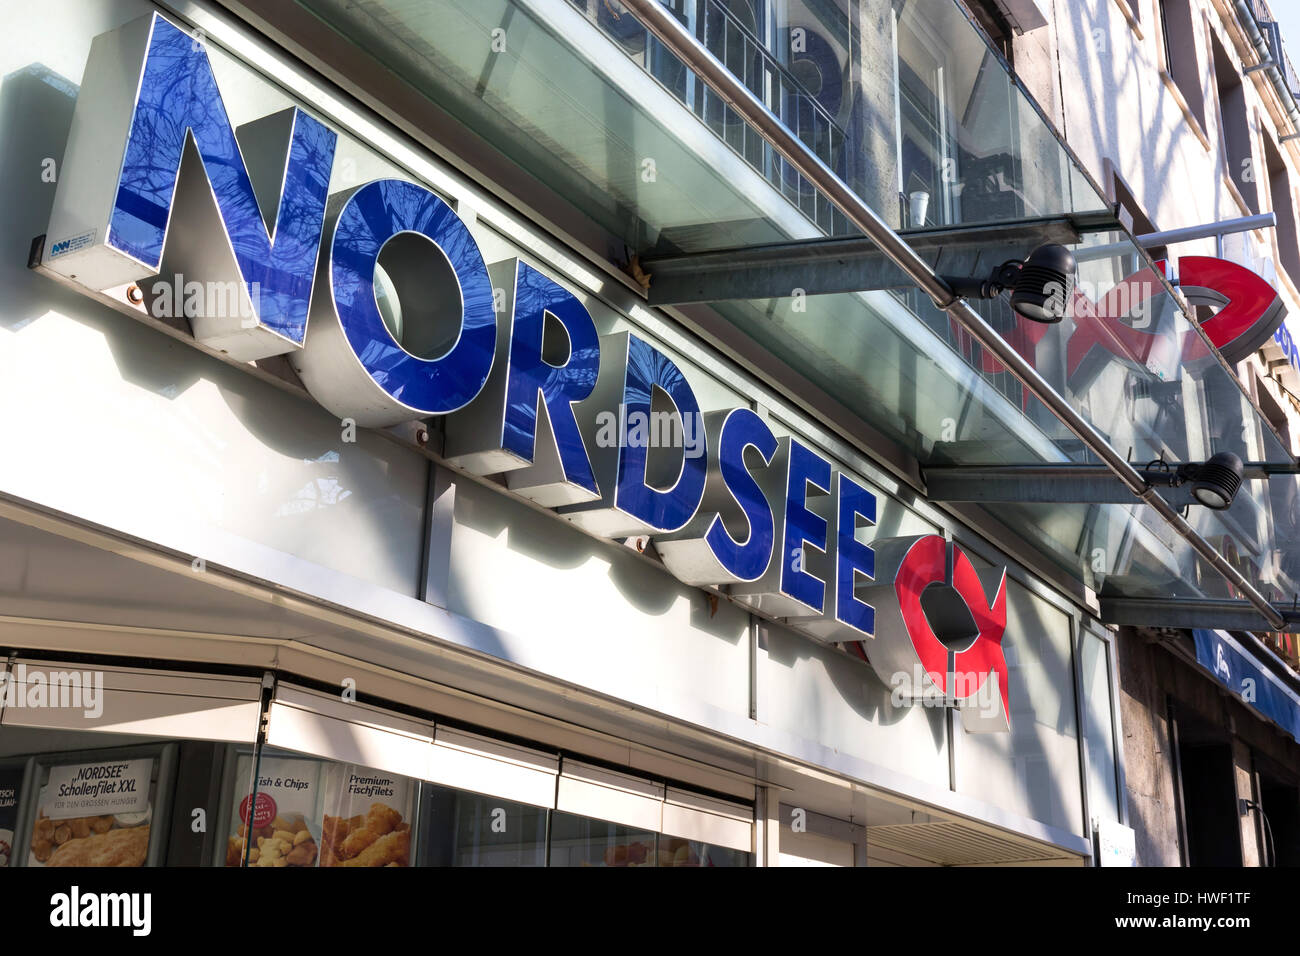 Nordsee ristorante. Nordsee è un tedesco di fast food della catena di ristorante specializzato in piatti di mare. Foto Stock